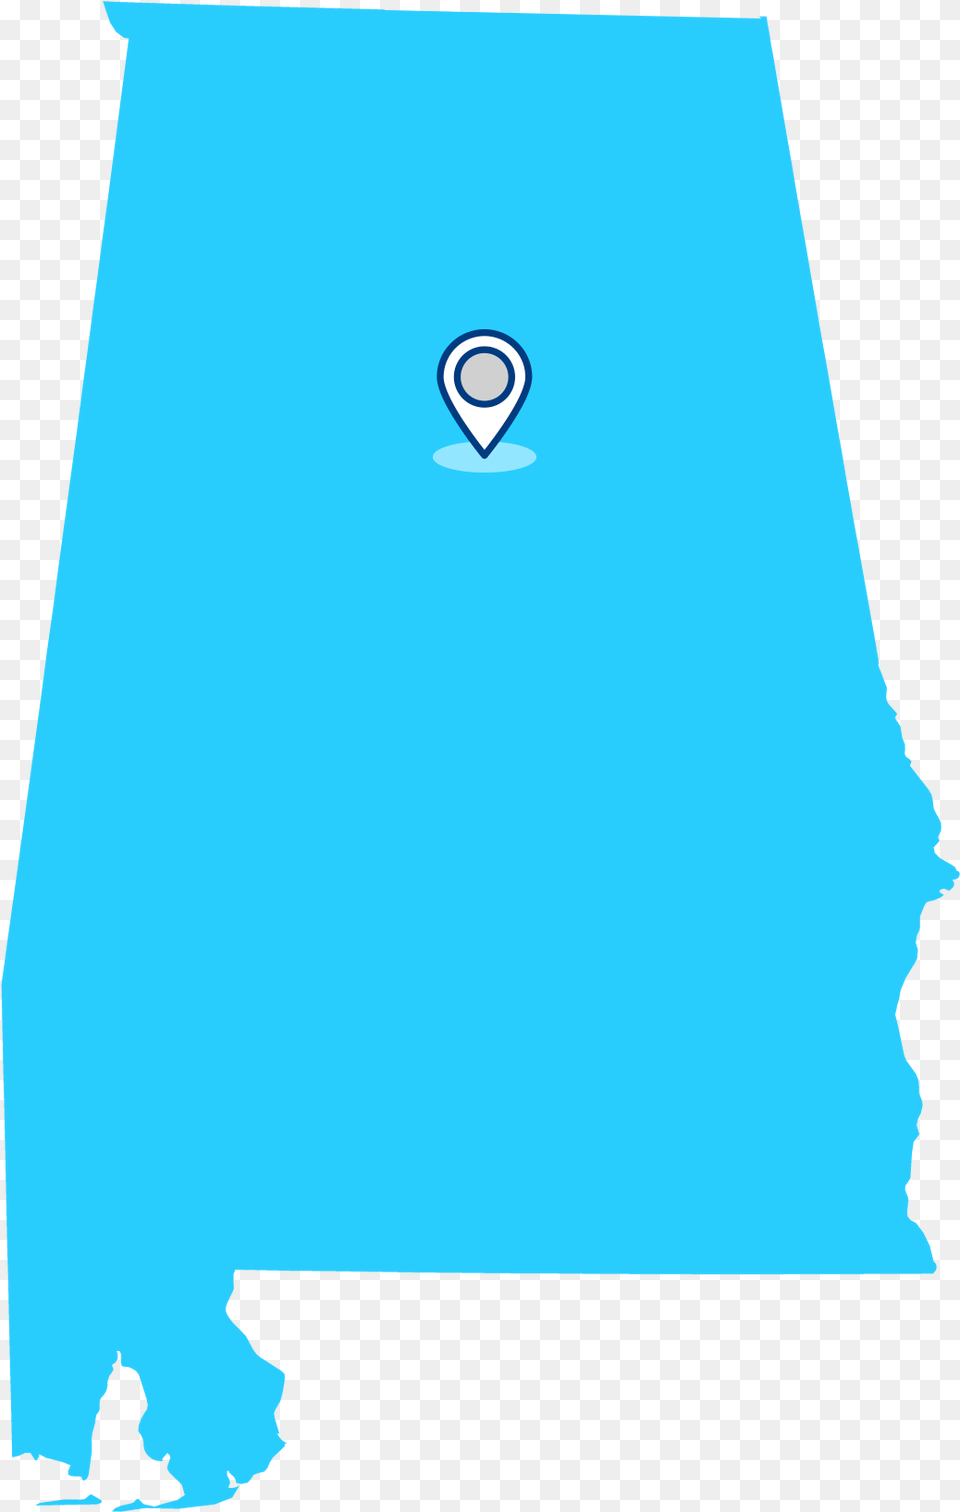 Alabama, Balloon, Aircraft, Transportation, Vehicle Png Image